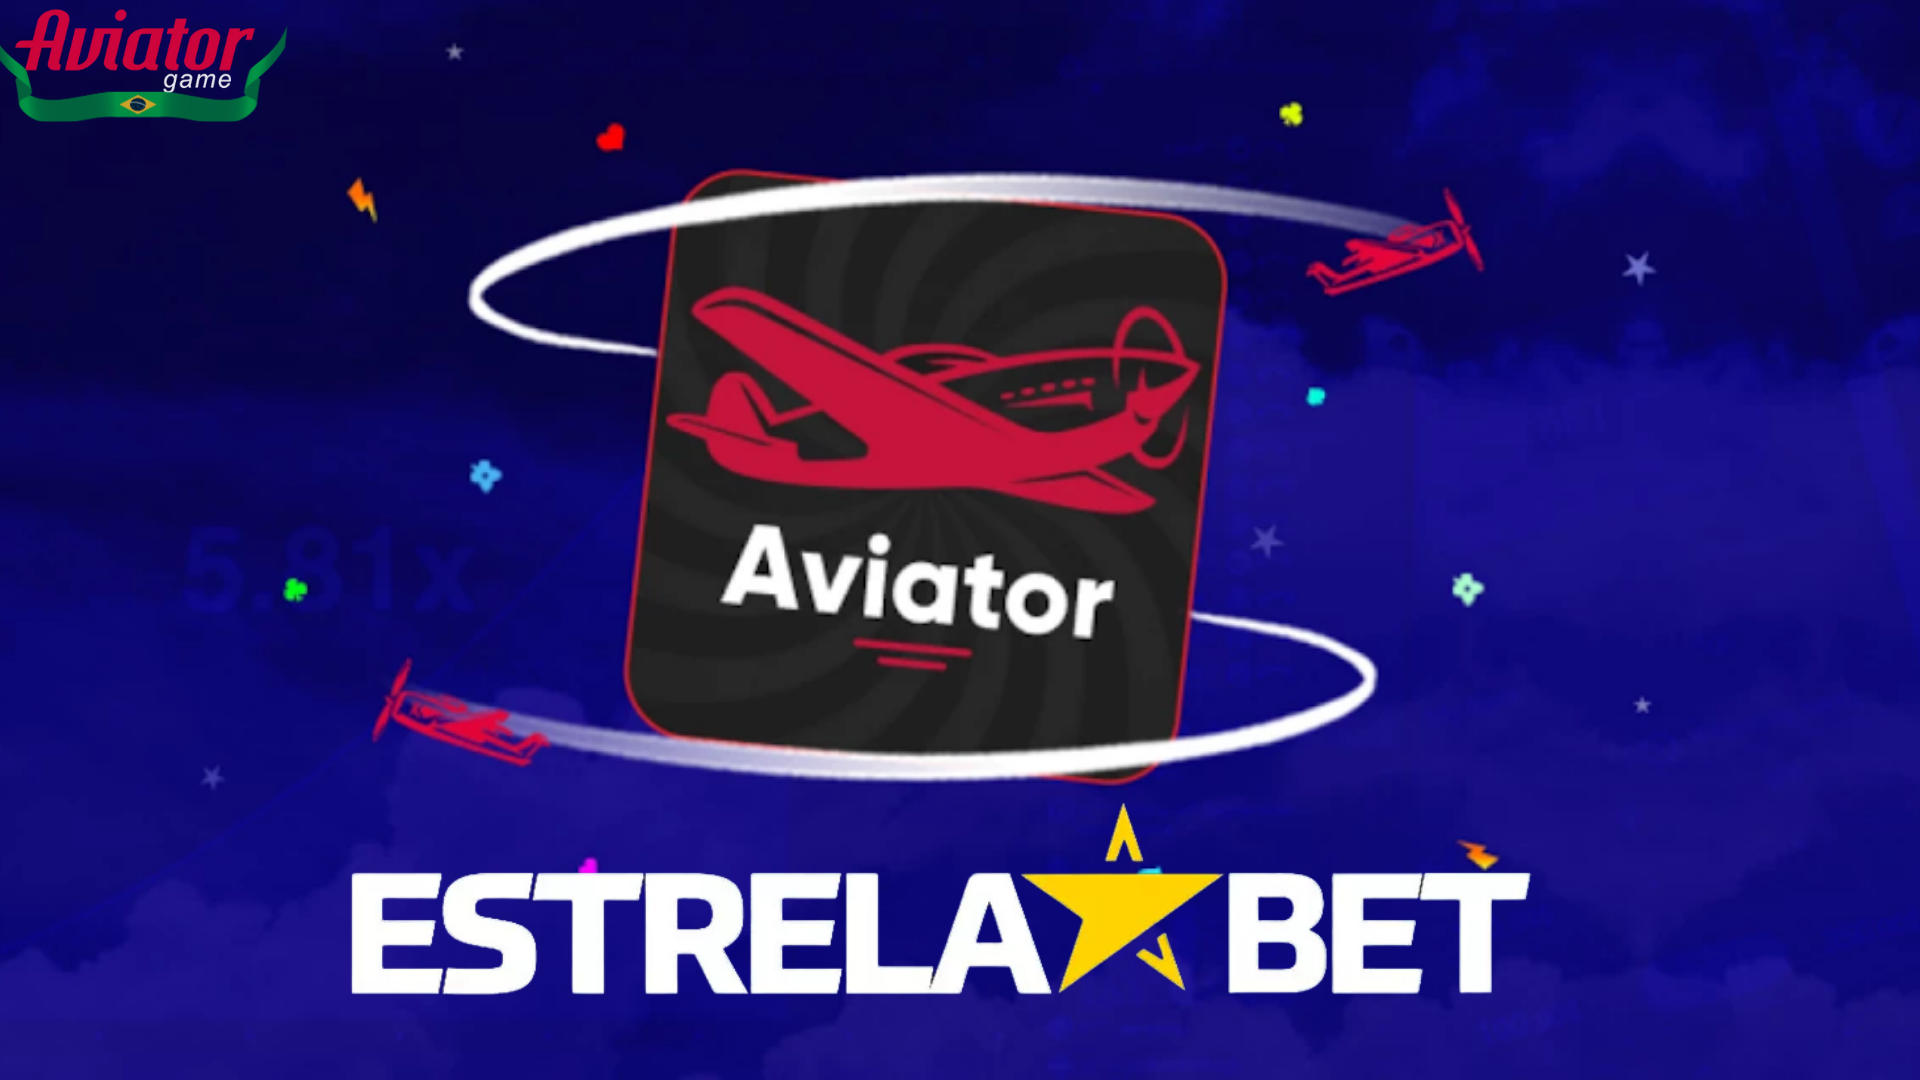 Estrela Bet Aviator: O Jogo de Apostas da Nova Era!